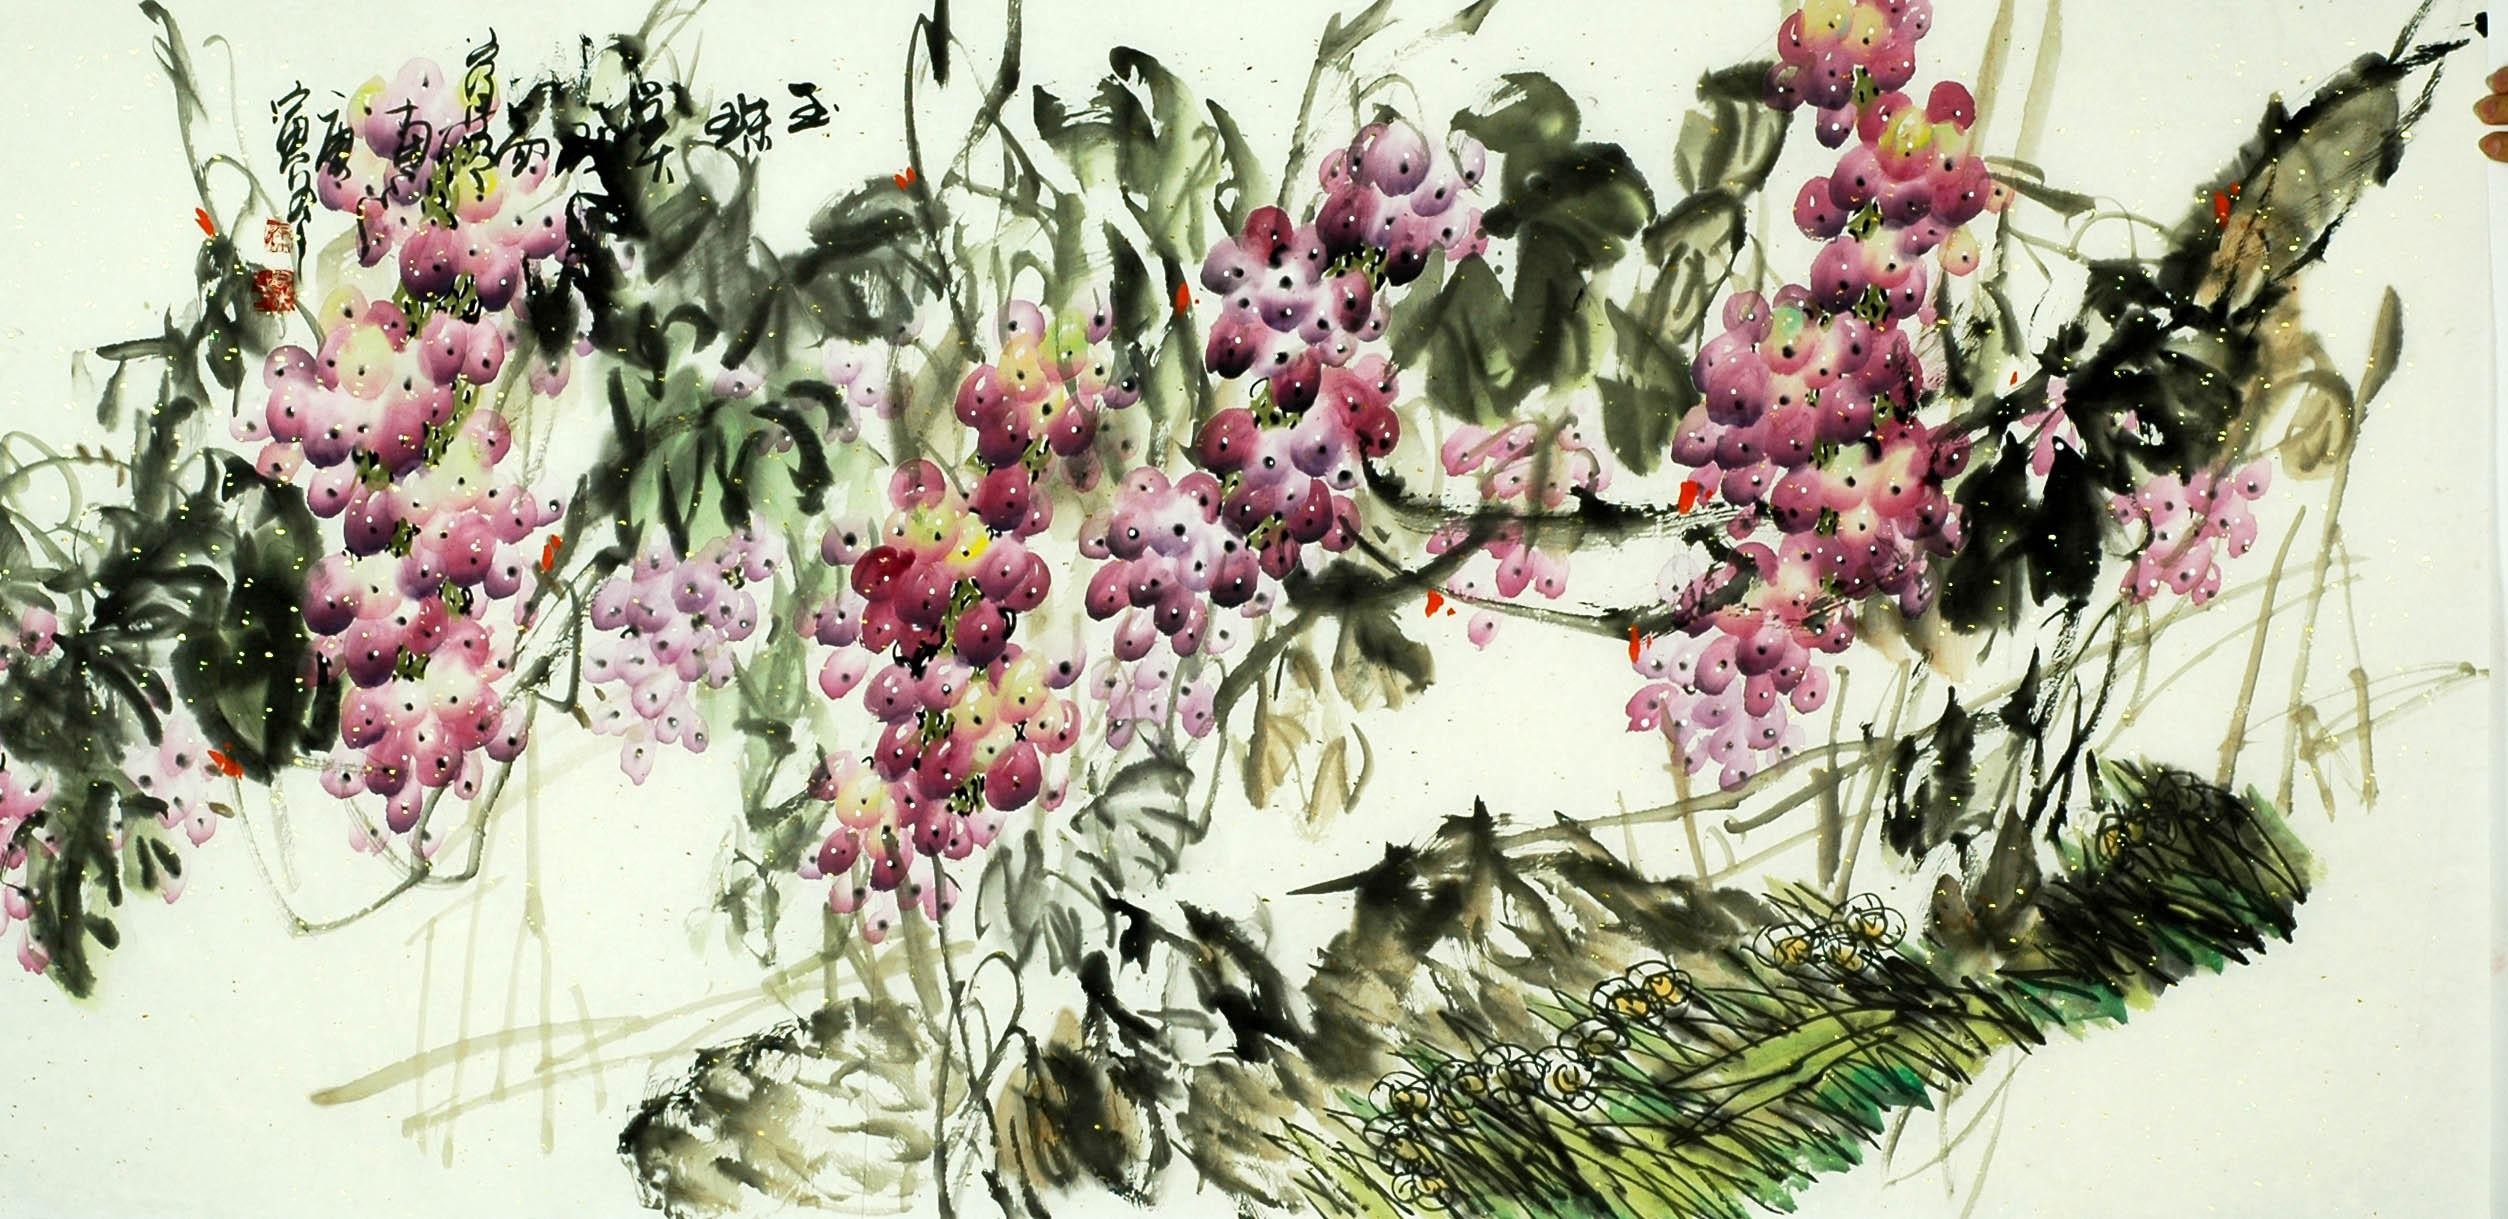 Chinese Grapes Painting - CNAG008037